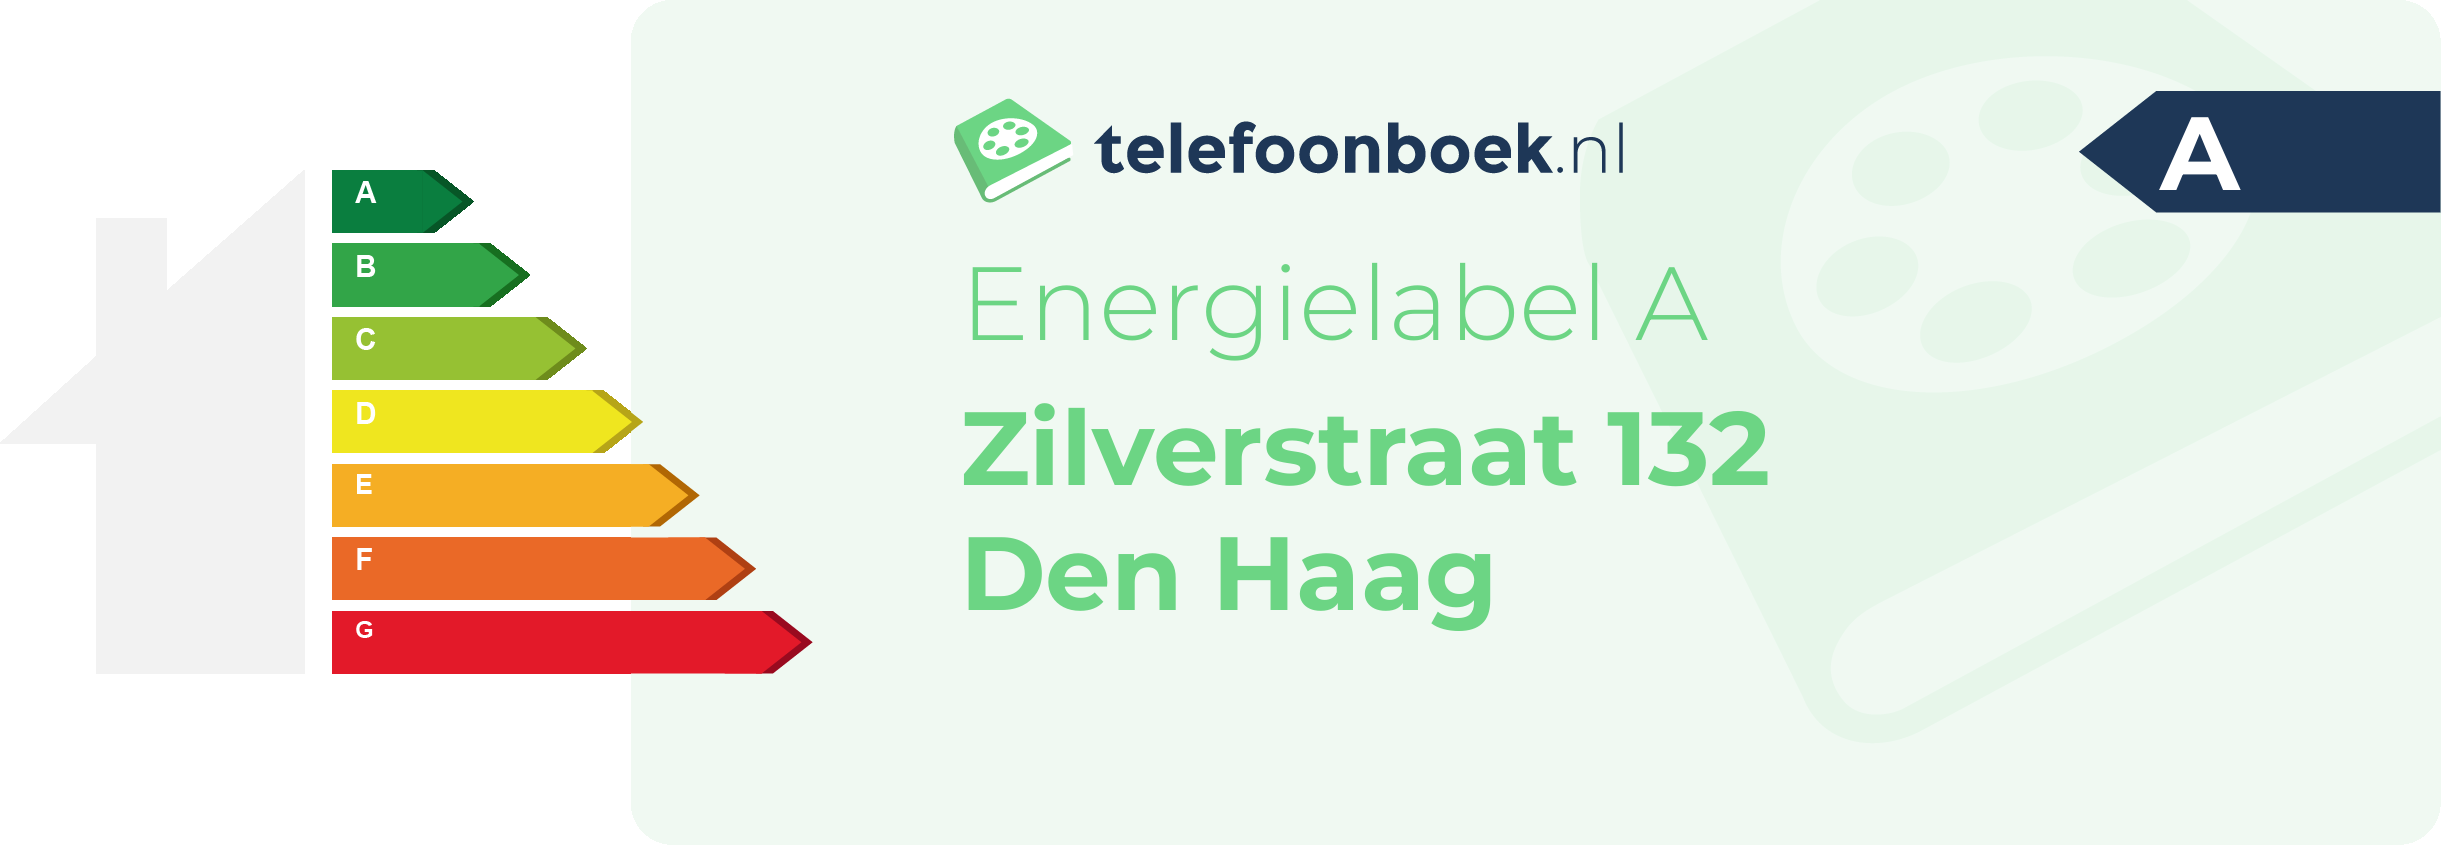 Energielabel Zilverstraat 132 Den Haag